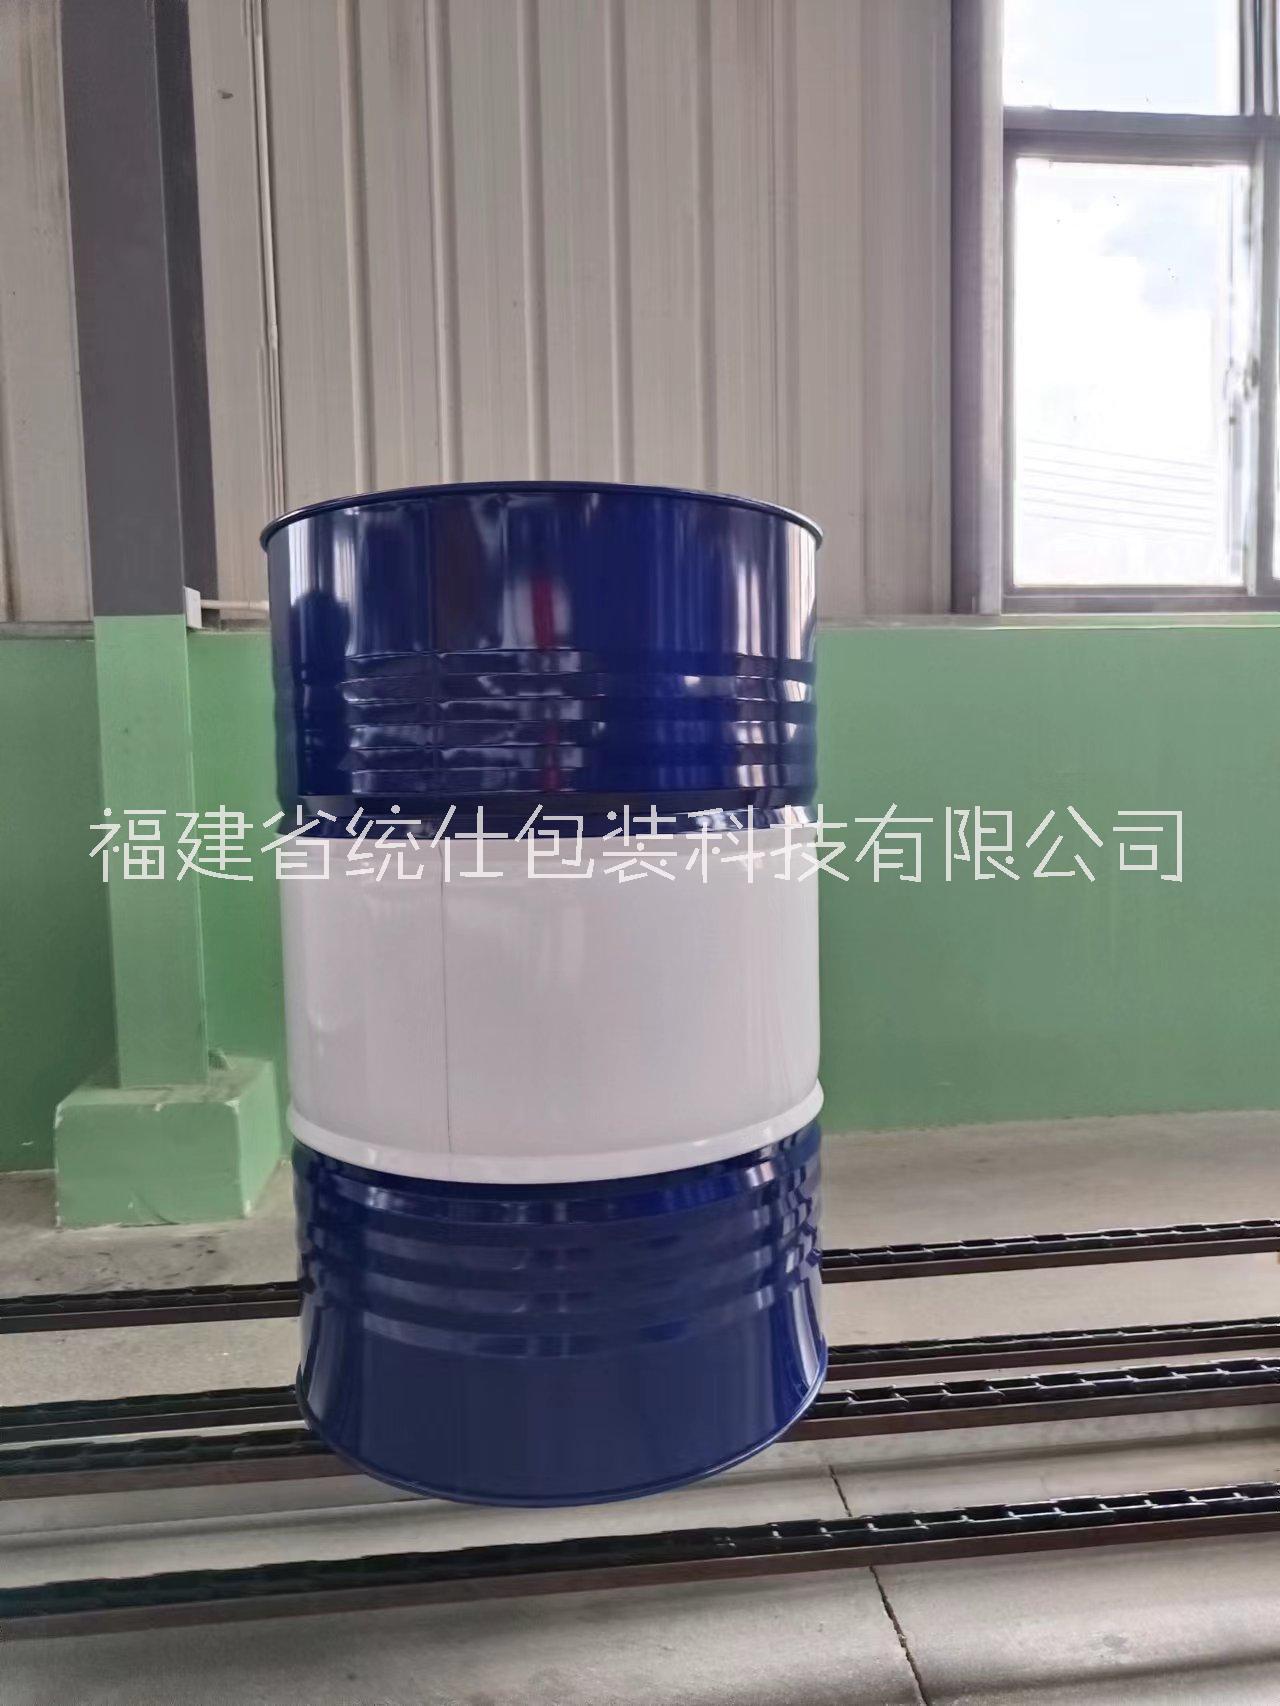 福建大铁桶烤漆桶镀锌桶生产厂家润滑油桶化工桶图片